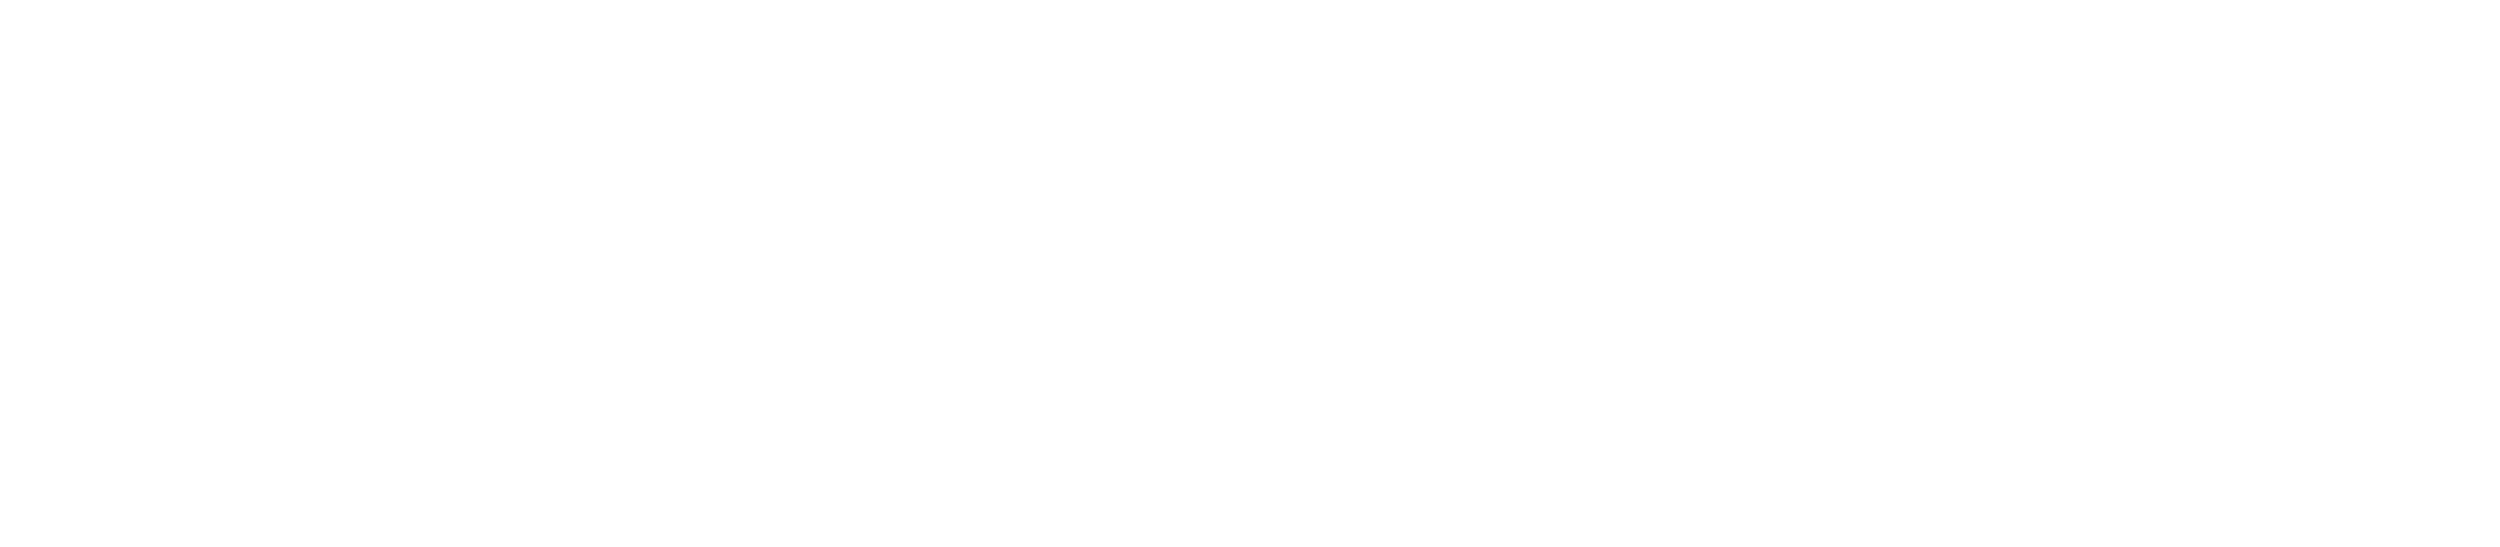 Dara Levy Events